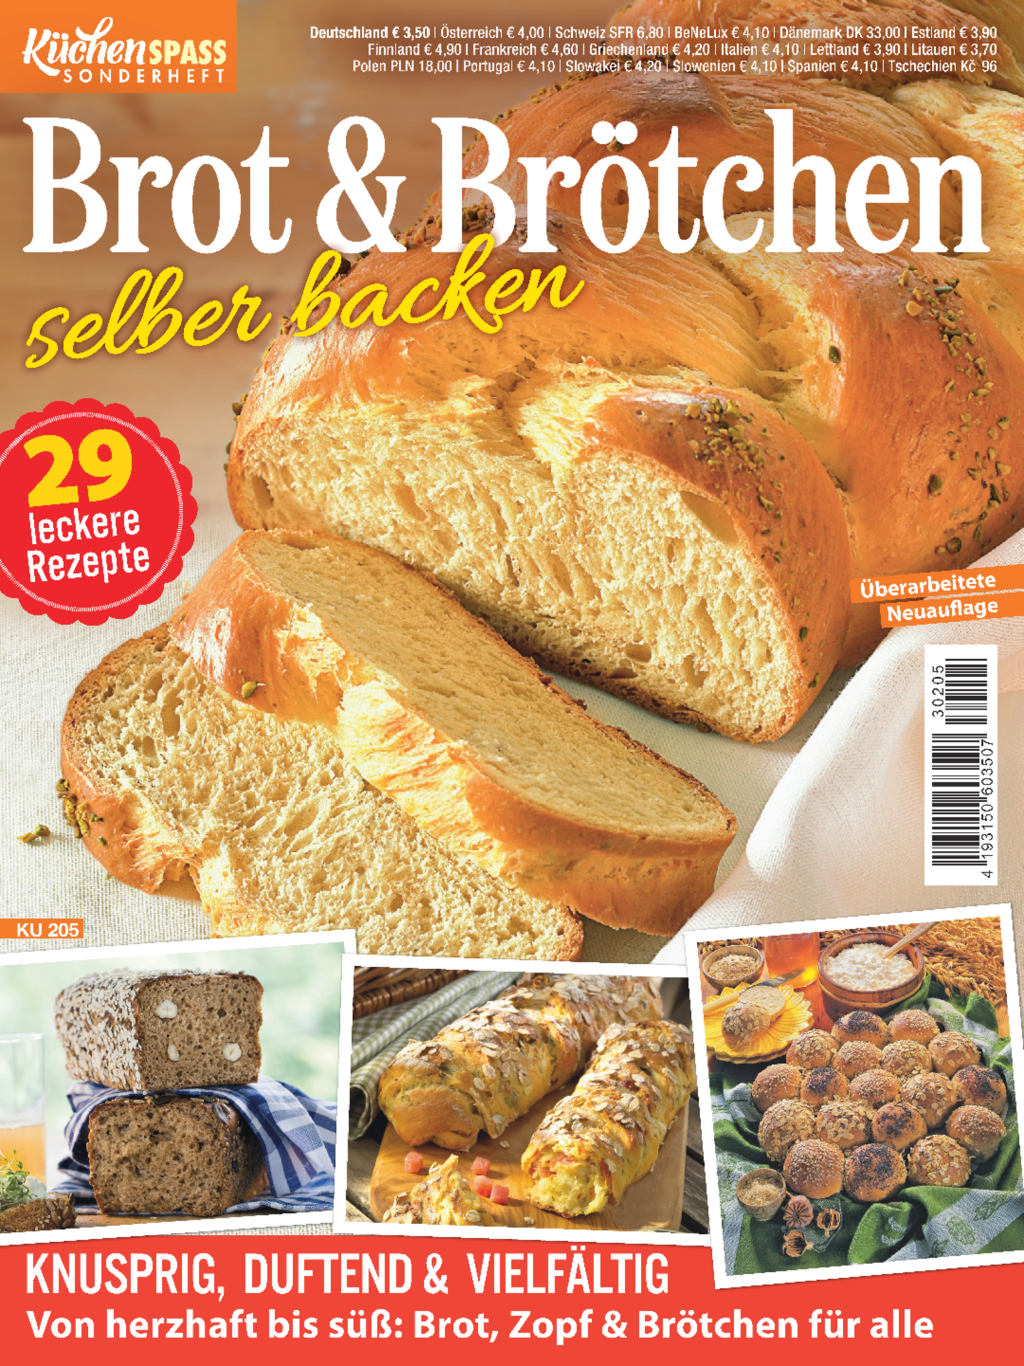 E-Paper: Küchenspaß Sonderheft KU 205 - Brot und Brötchen